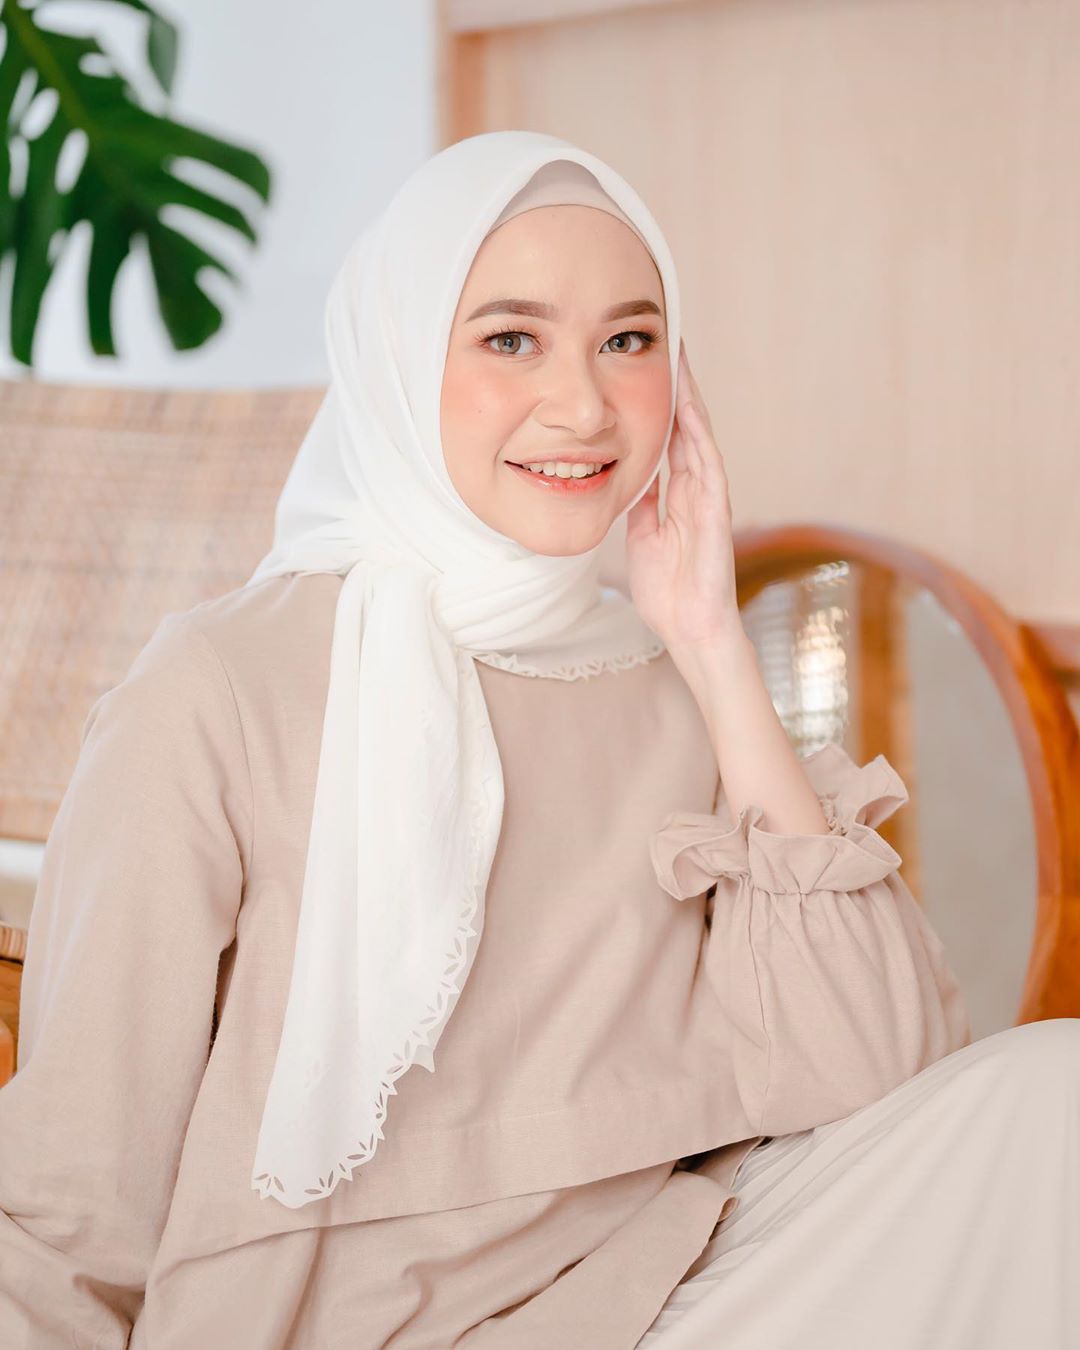 #PopbelaOOTD: Sambut Momen Ramadan Menggunakan Hijab Putih Ini